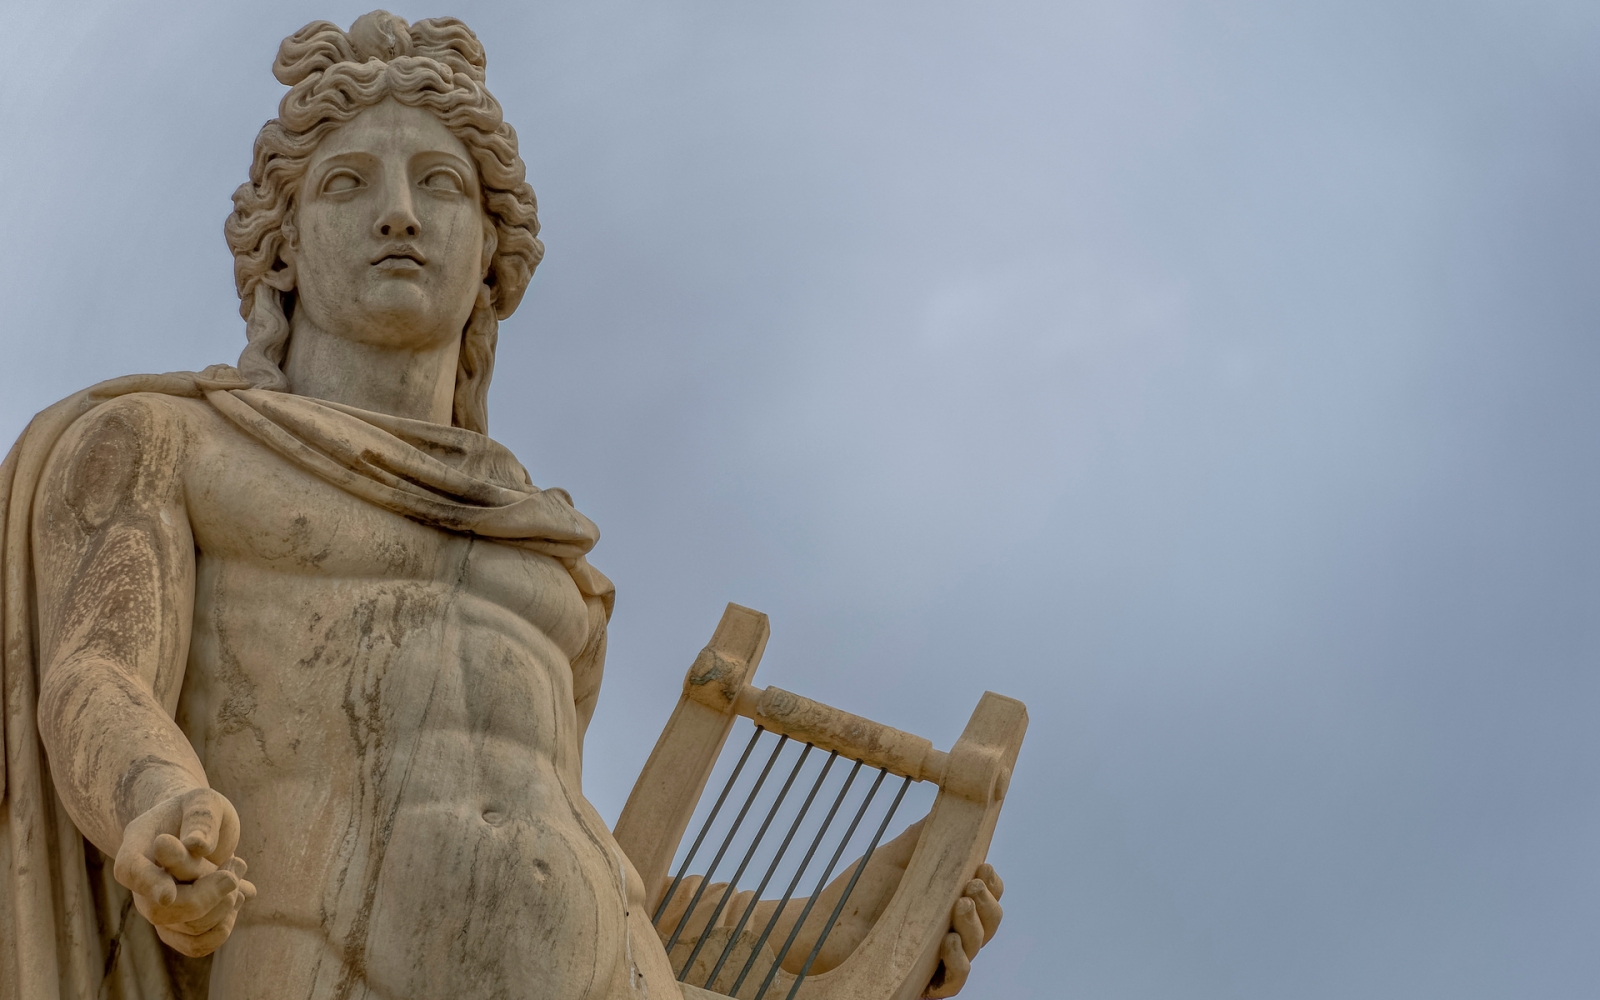 Apollo-Marmorstatue, der antike Gott der Musik und Poesie, Athen, Griechenland